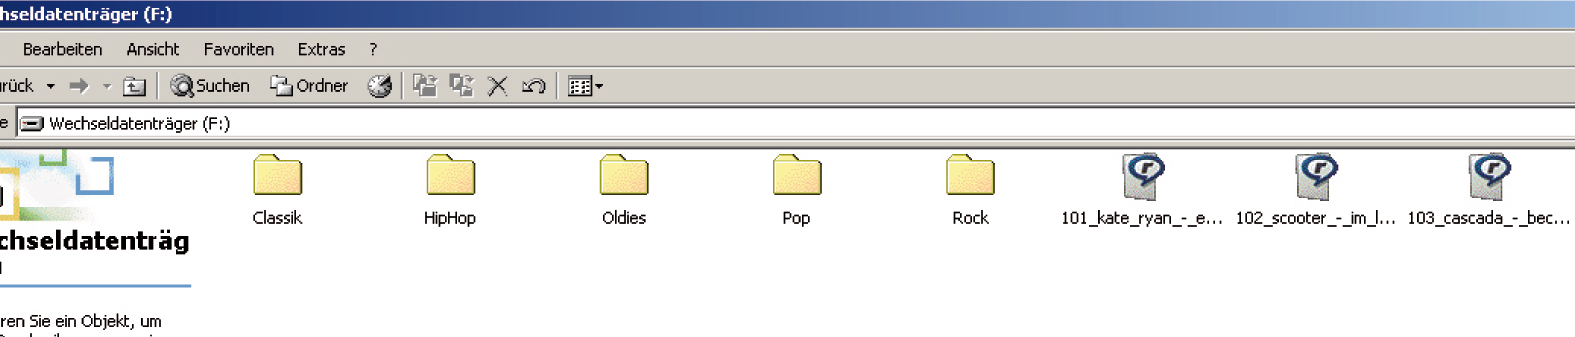 Dateistruktur für SD Card/ USB Das Music Interface unterstützt die Verarbeitung mehrerer auf dem Speichermedium befindlichen Ordner (99 inkl. Verzeichnisstruktur).